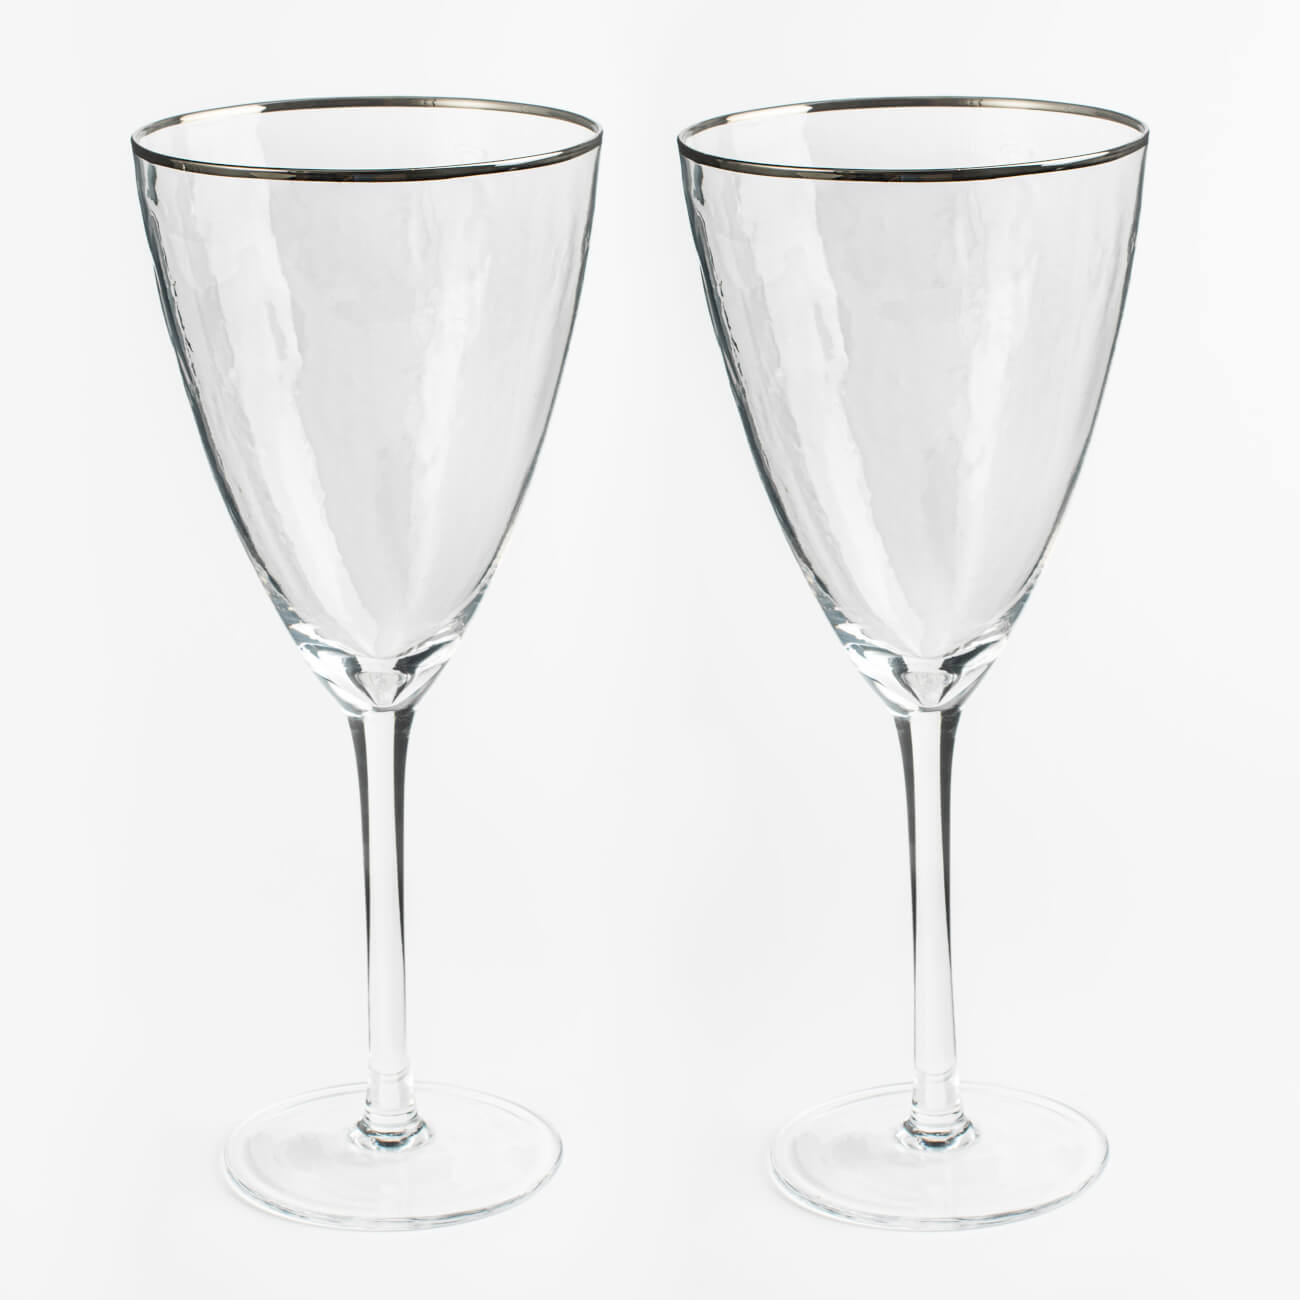 Бокал для вина, 400 мл, 2 шт, стекло, с серебристым кантом, Ripply silver бокал для вина 400 мл 2 шт стекло перламутр ripply polar